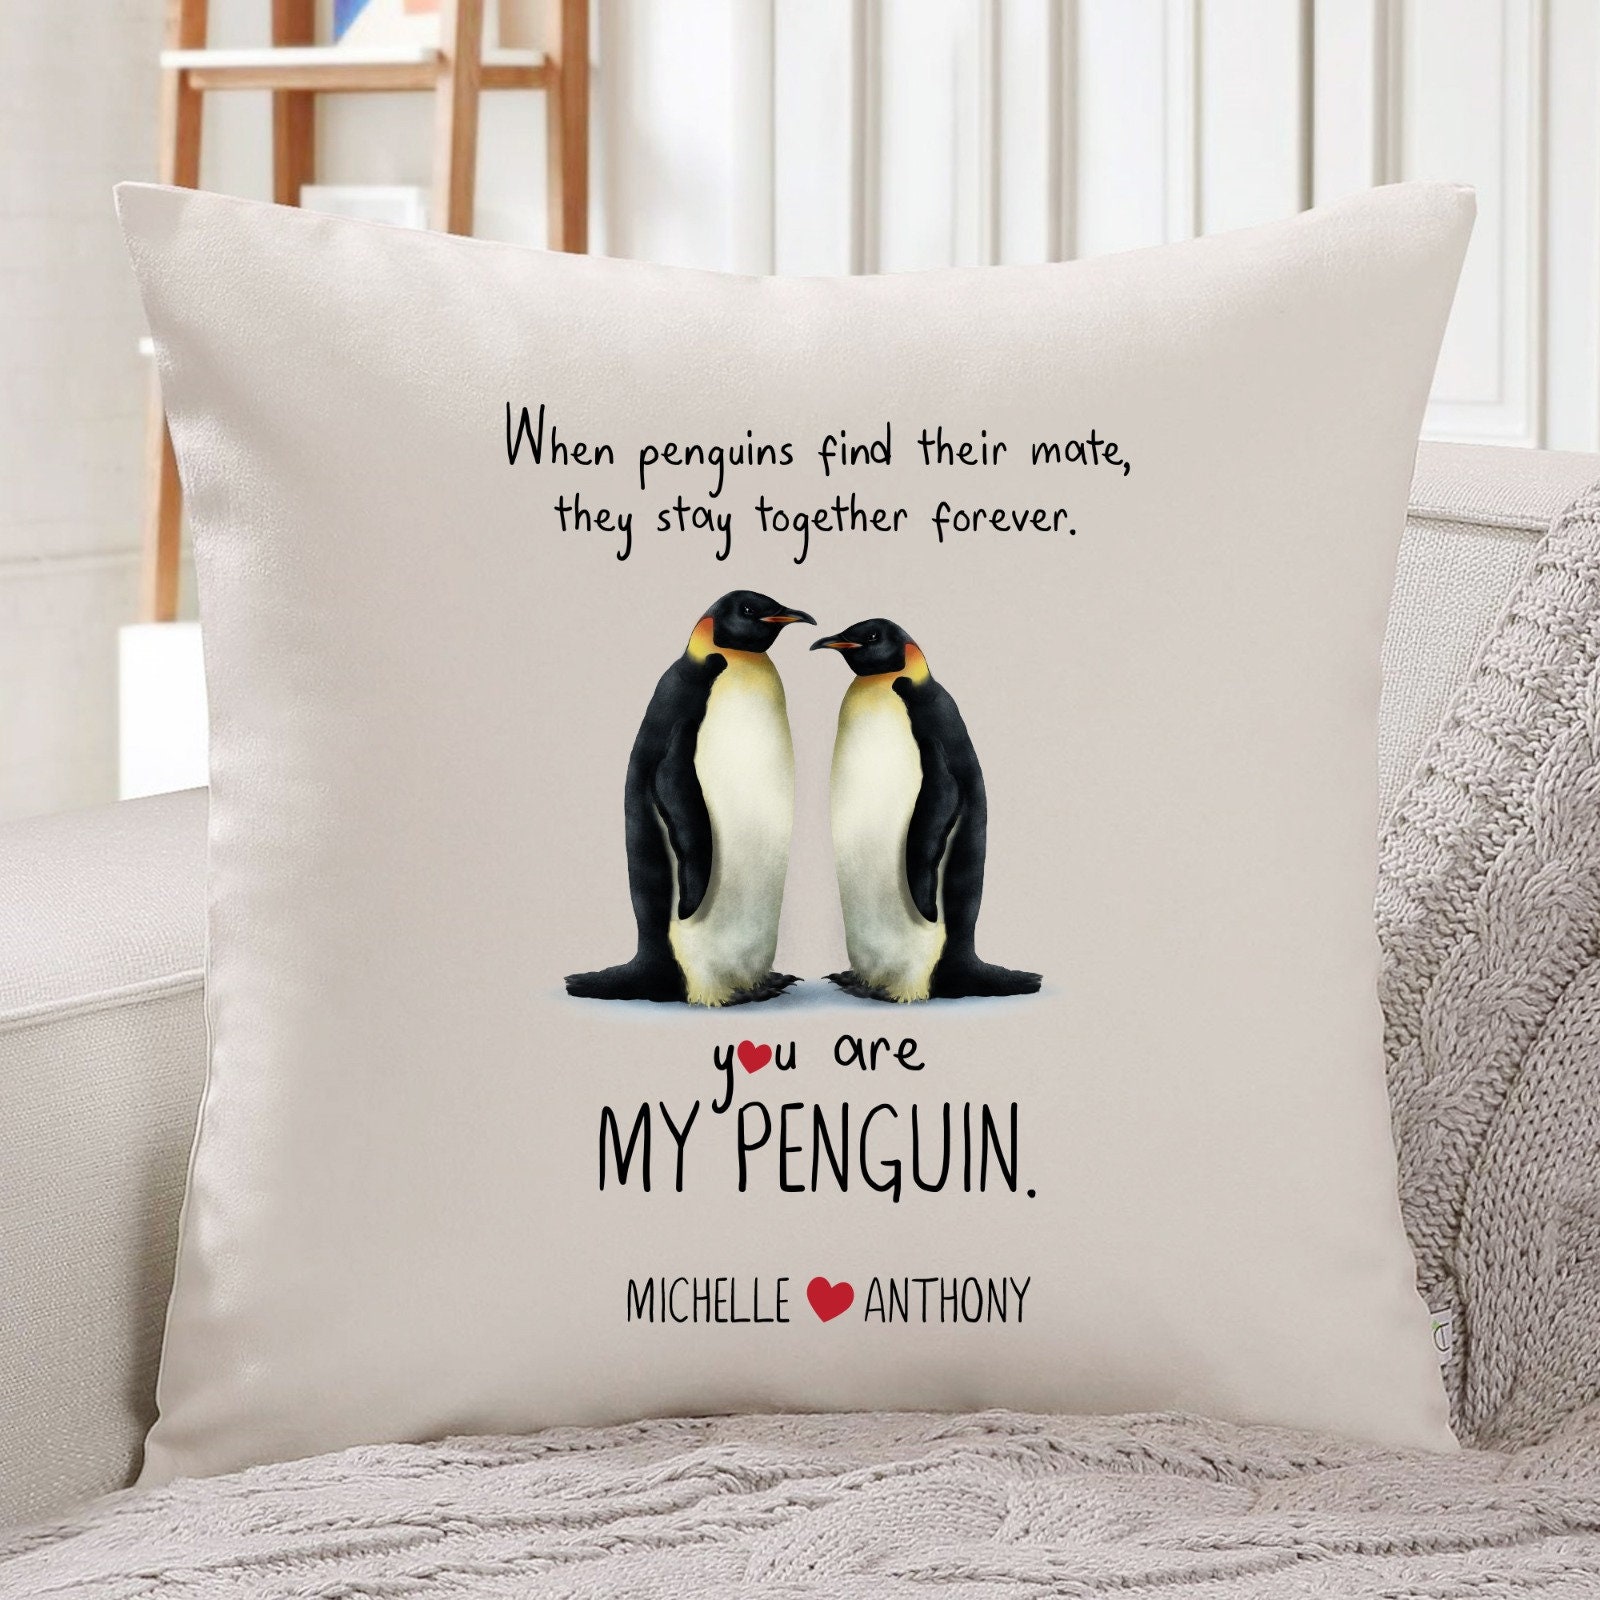 Le mot pingouin traduit en anglais.